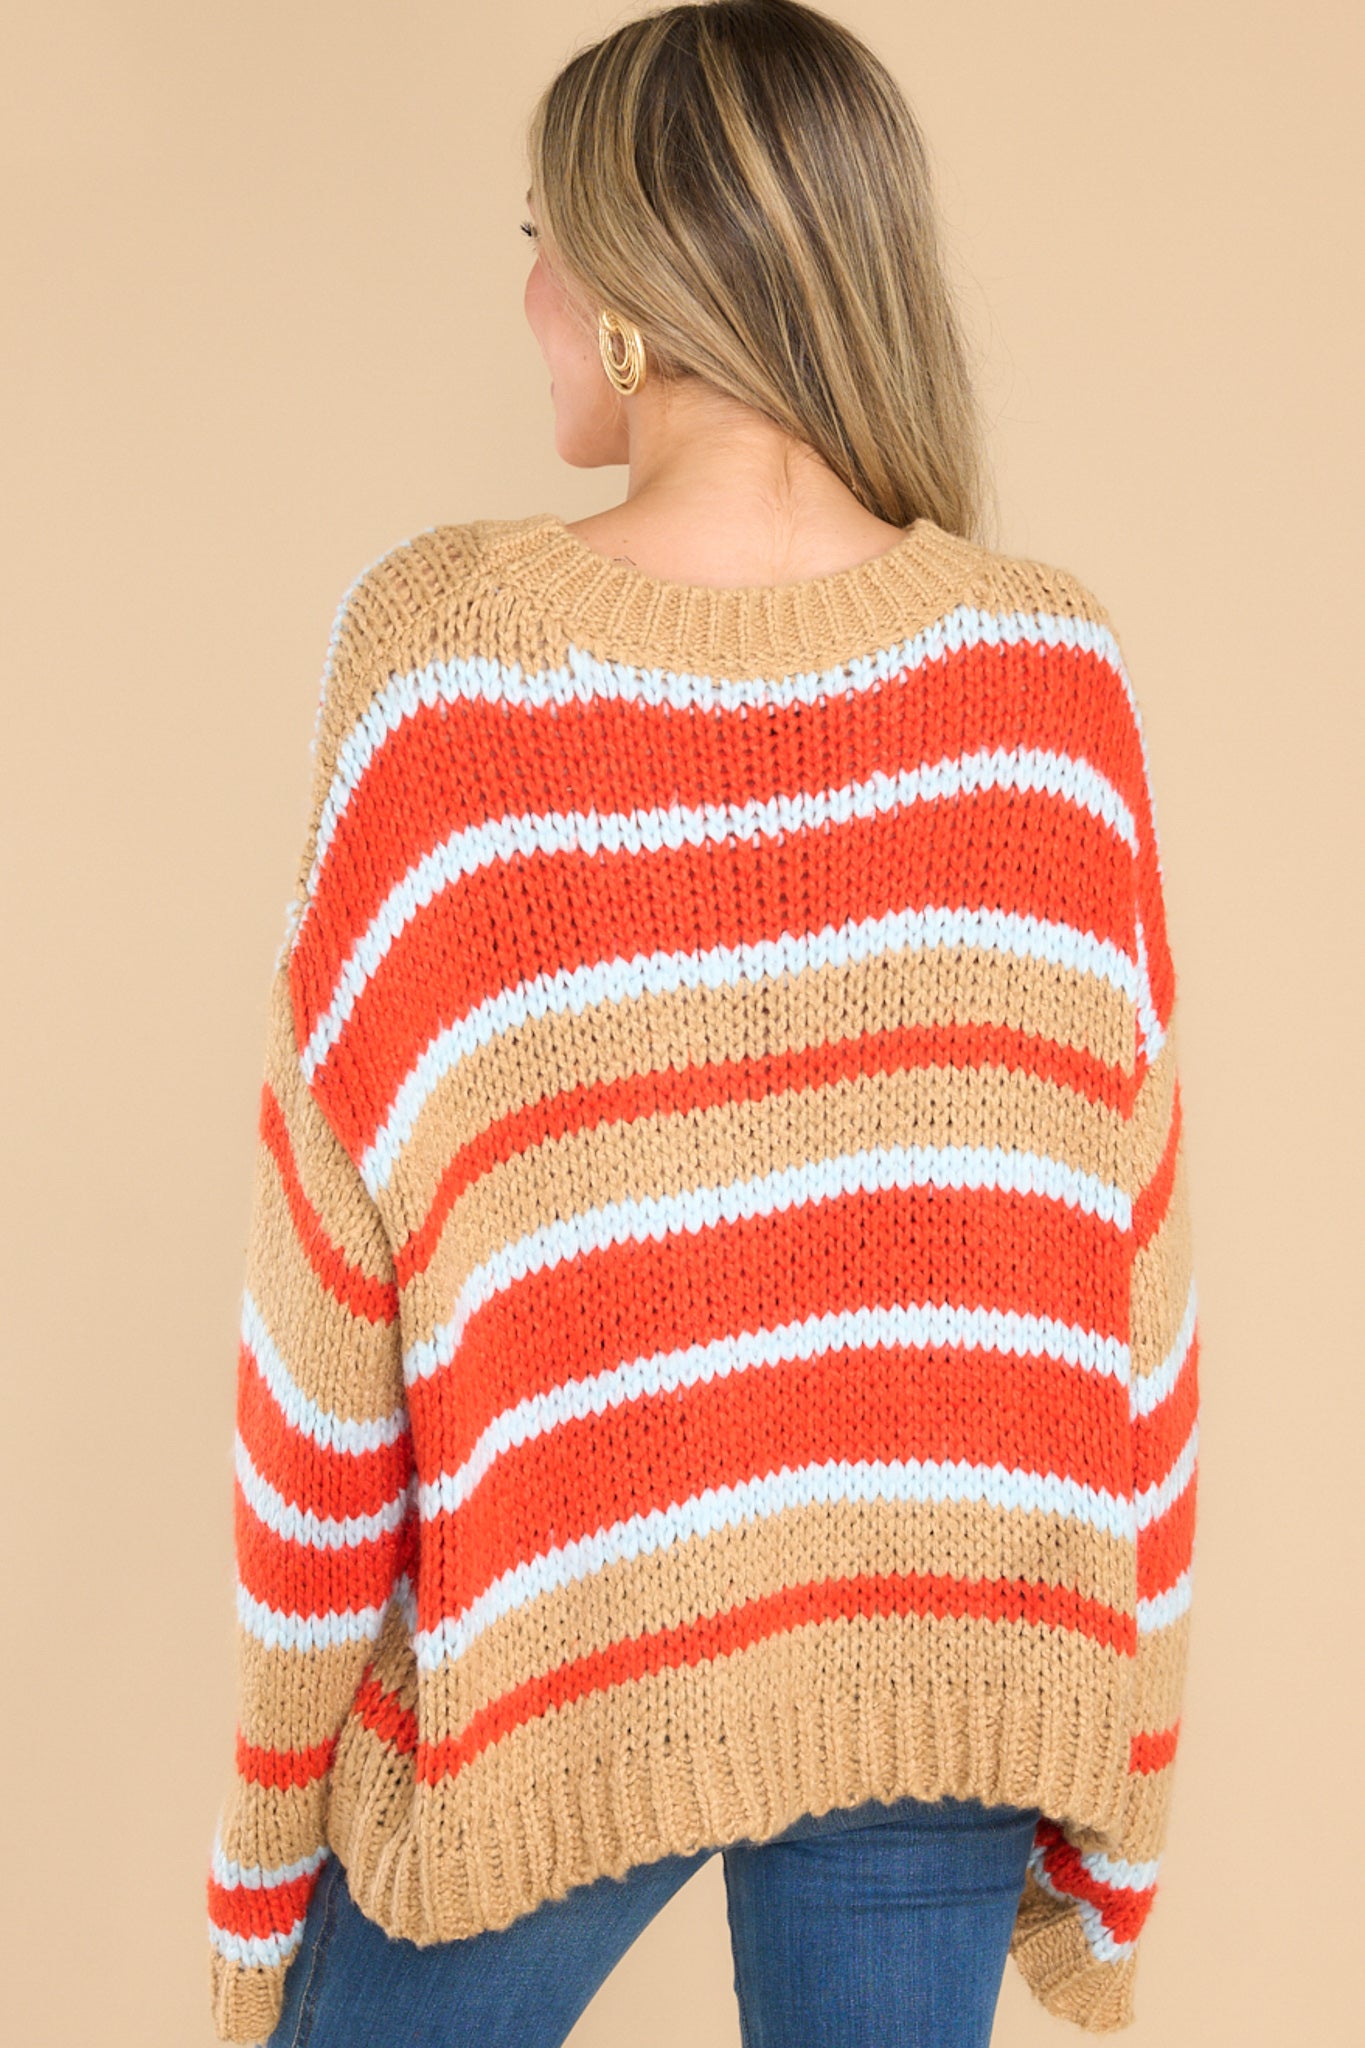 Good Pep Talk Tan Multi Stripe Sweater